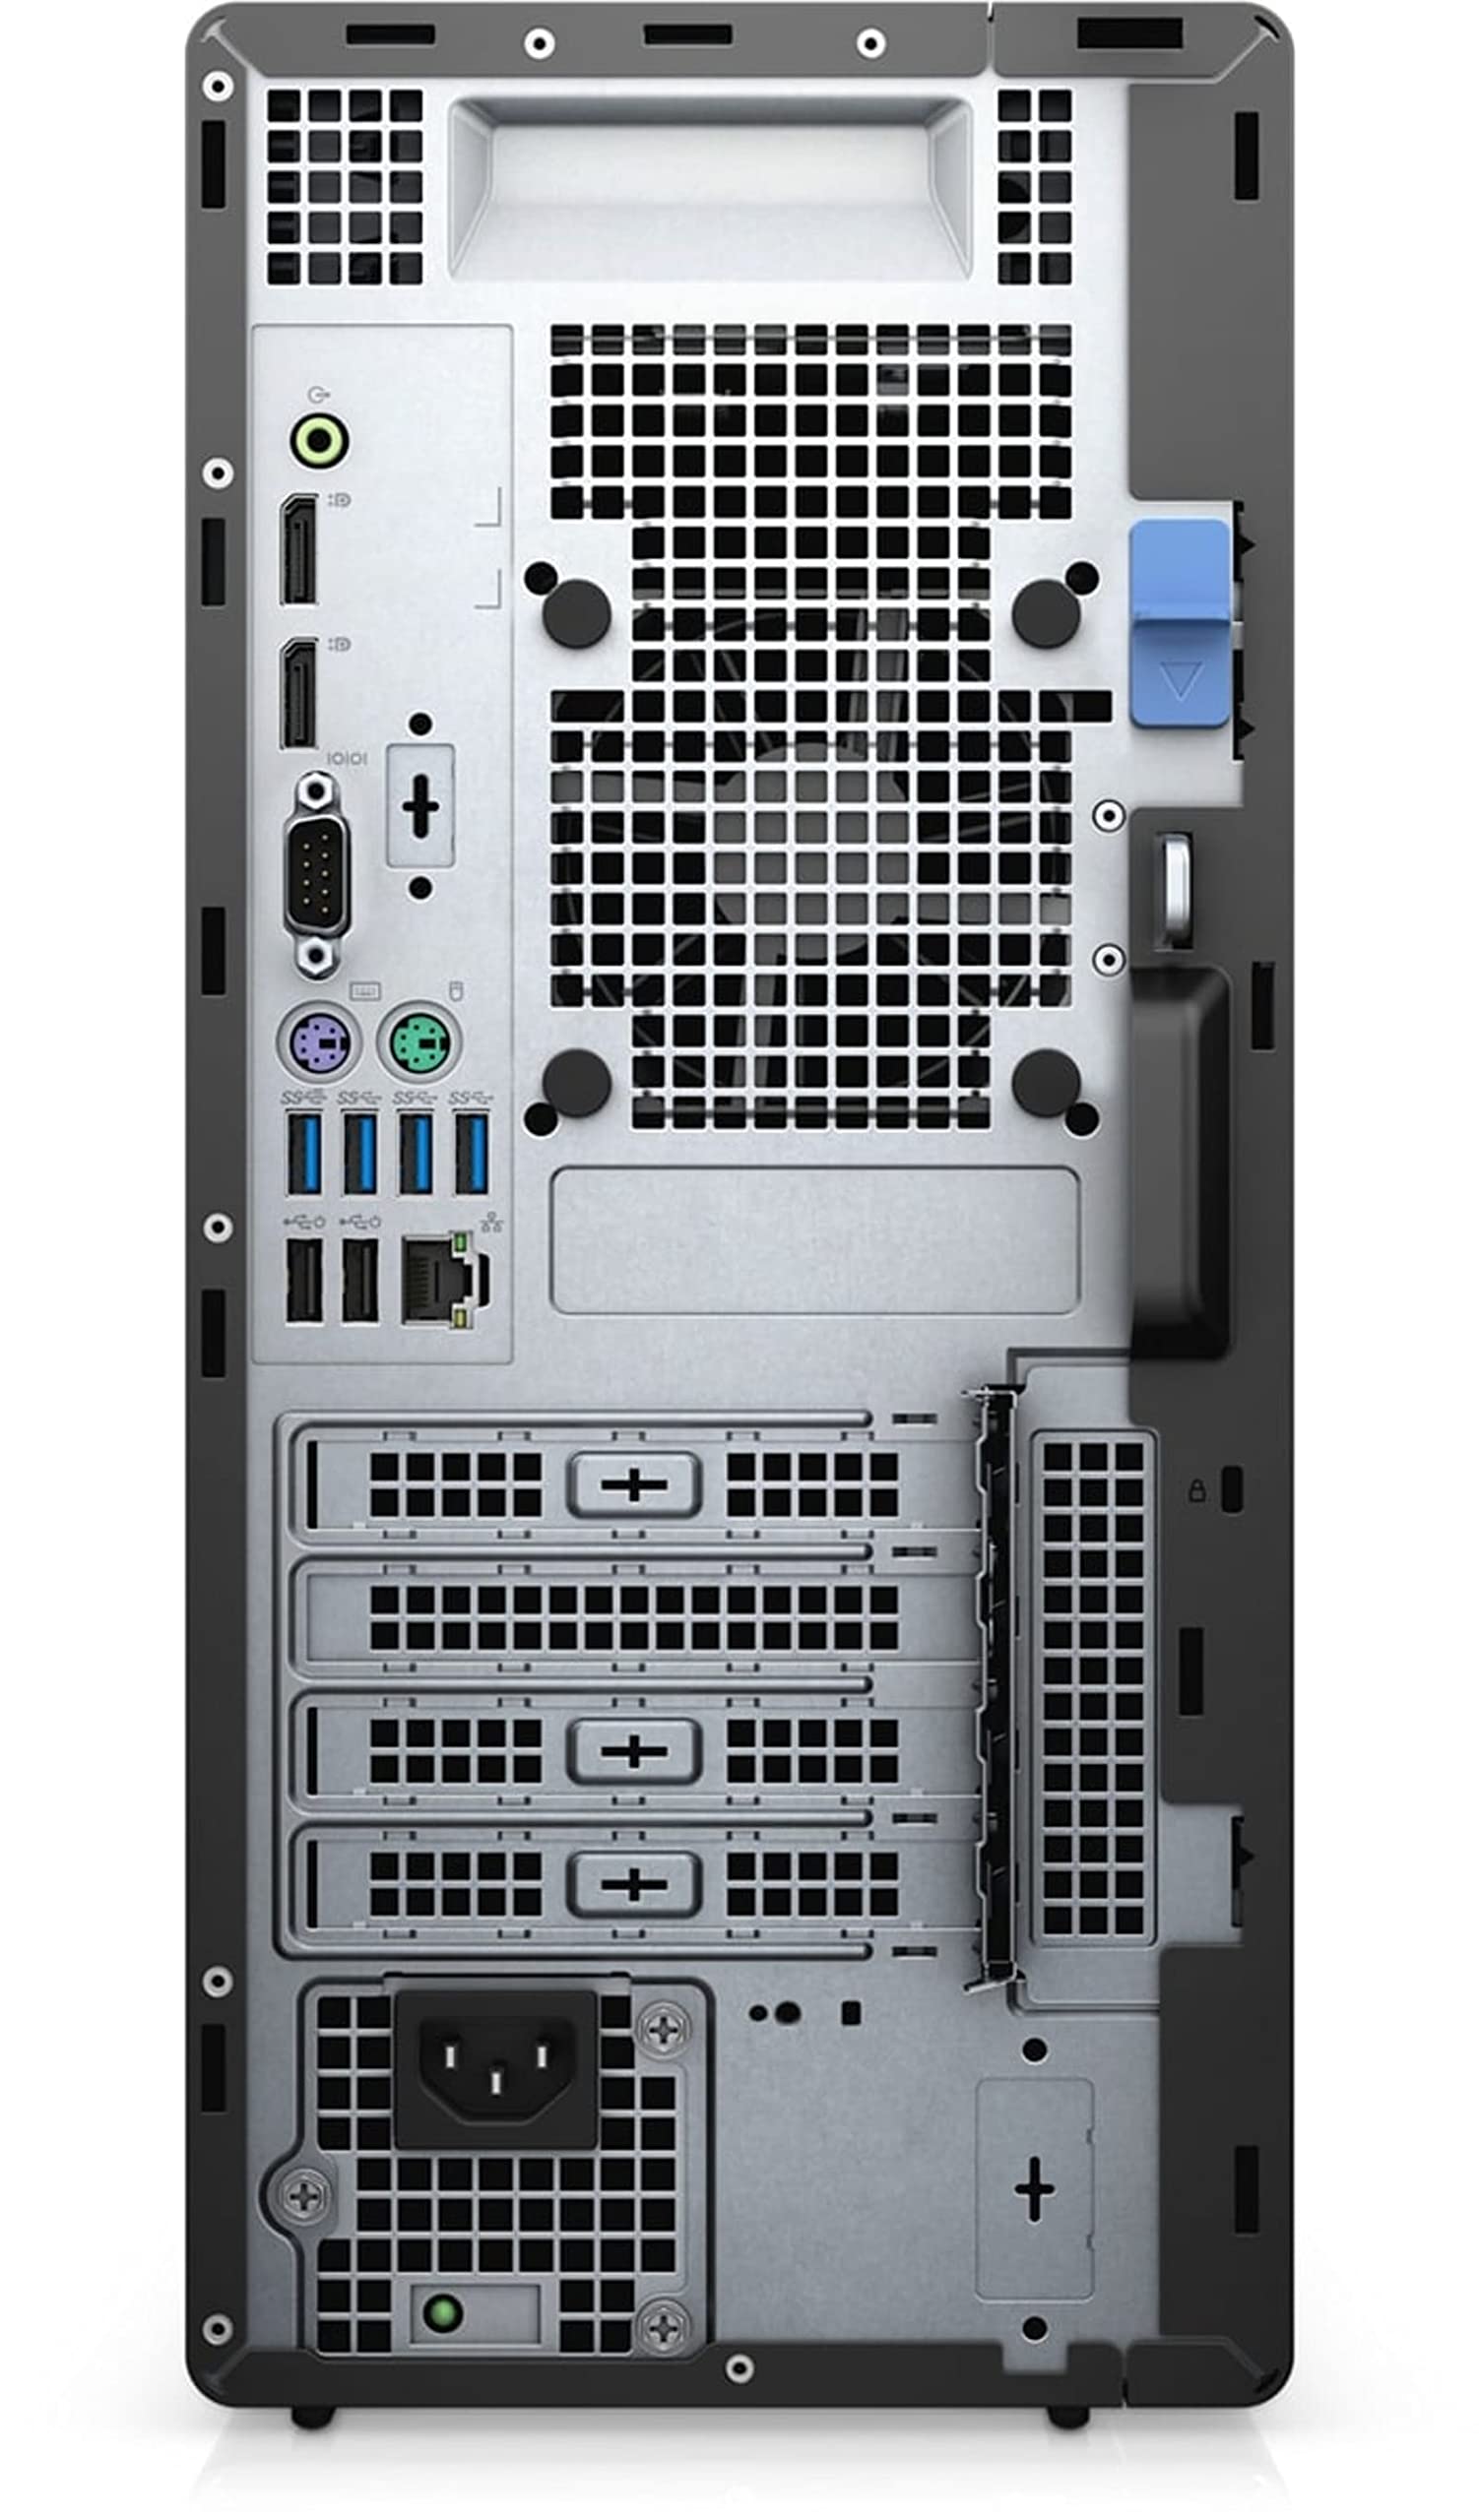 Dell OptiPlex 7000 7090 MT Mini Tower Desktop (2021) | Core i5-256GB SSD - 32GB RAM - GT 730 | 6 Cores @ 4.6 GHz - 10th Gen CPU Win 10 Pro (Renewed)